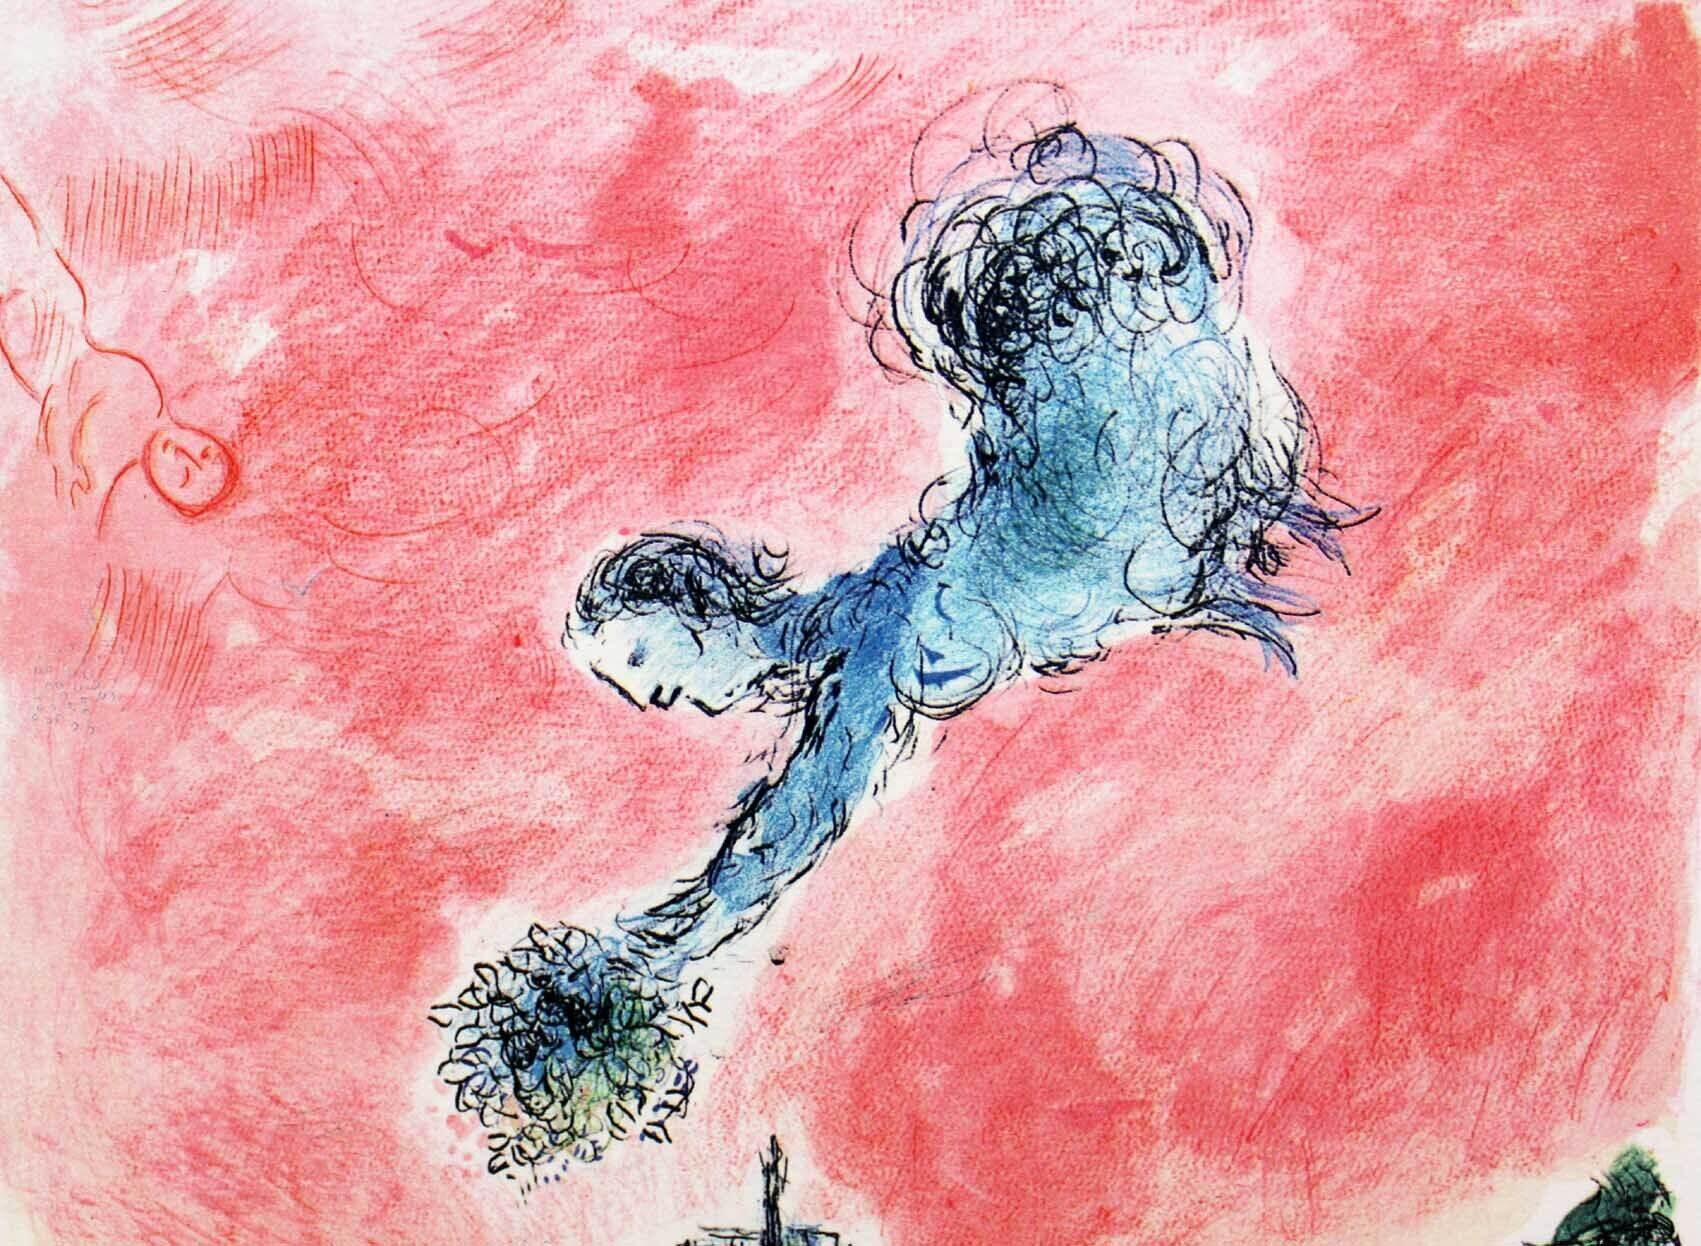 マルク・シャガール絵画「ノートルダムの眺め」作品証明書・展示用フック・限定375部エディション付複製画ジークレ